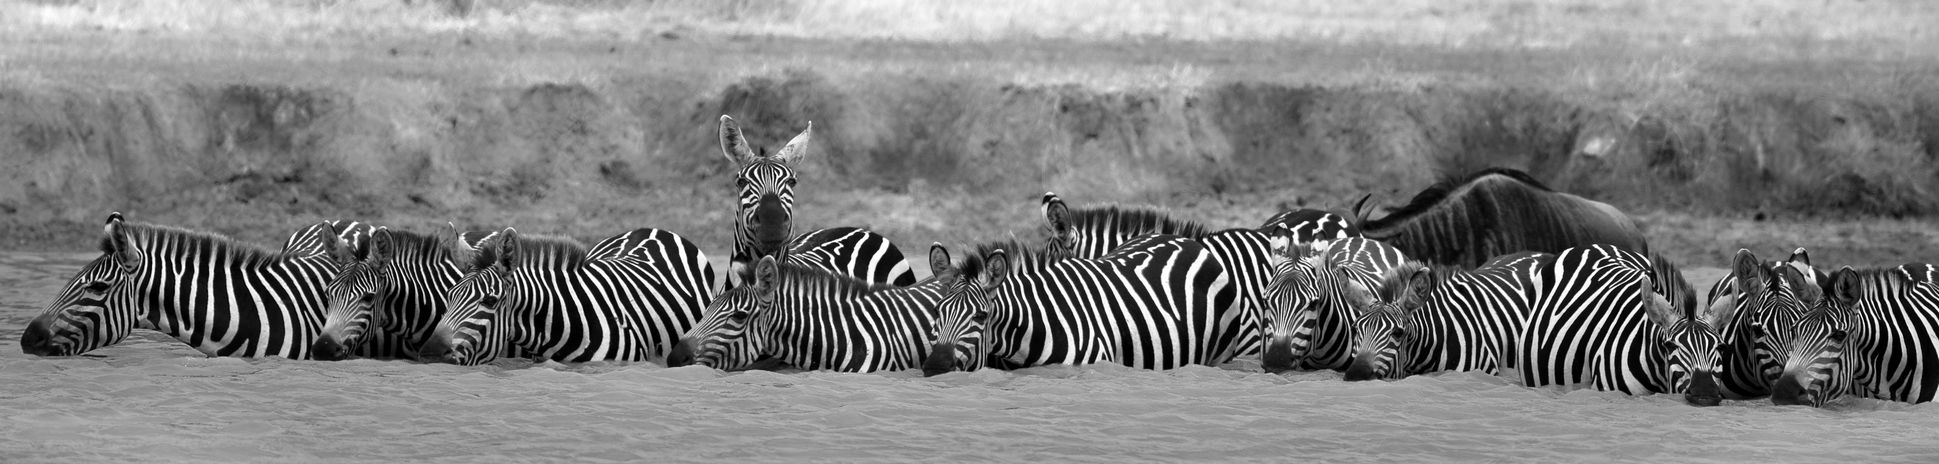 Zebras 9